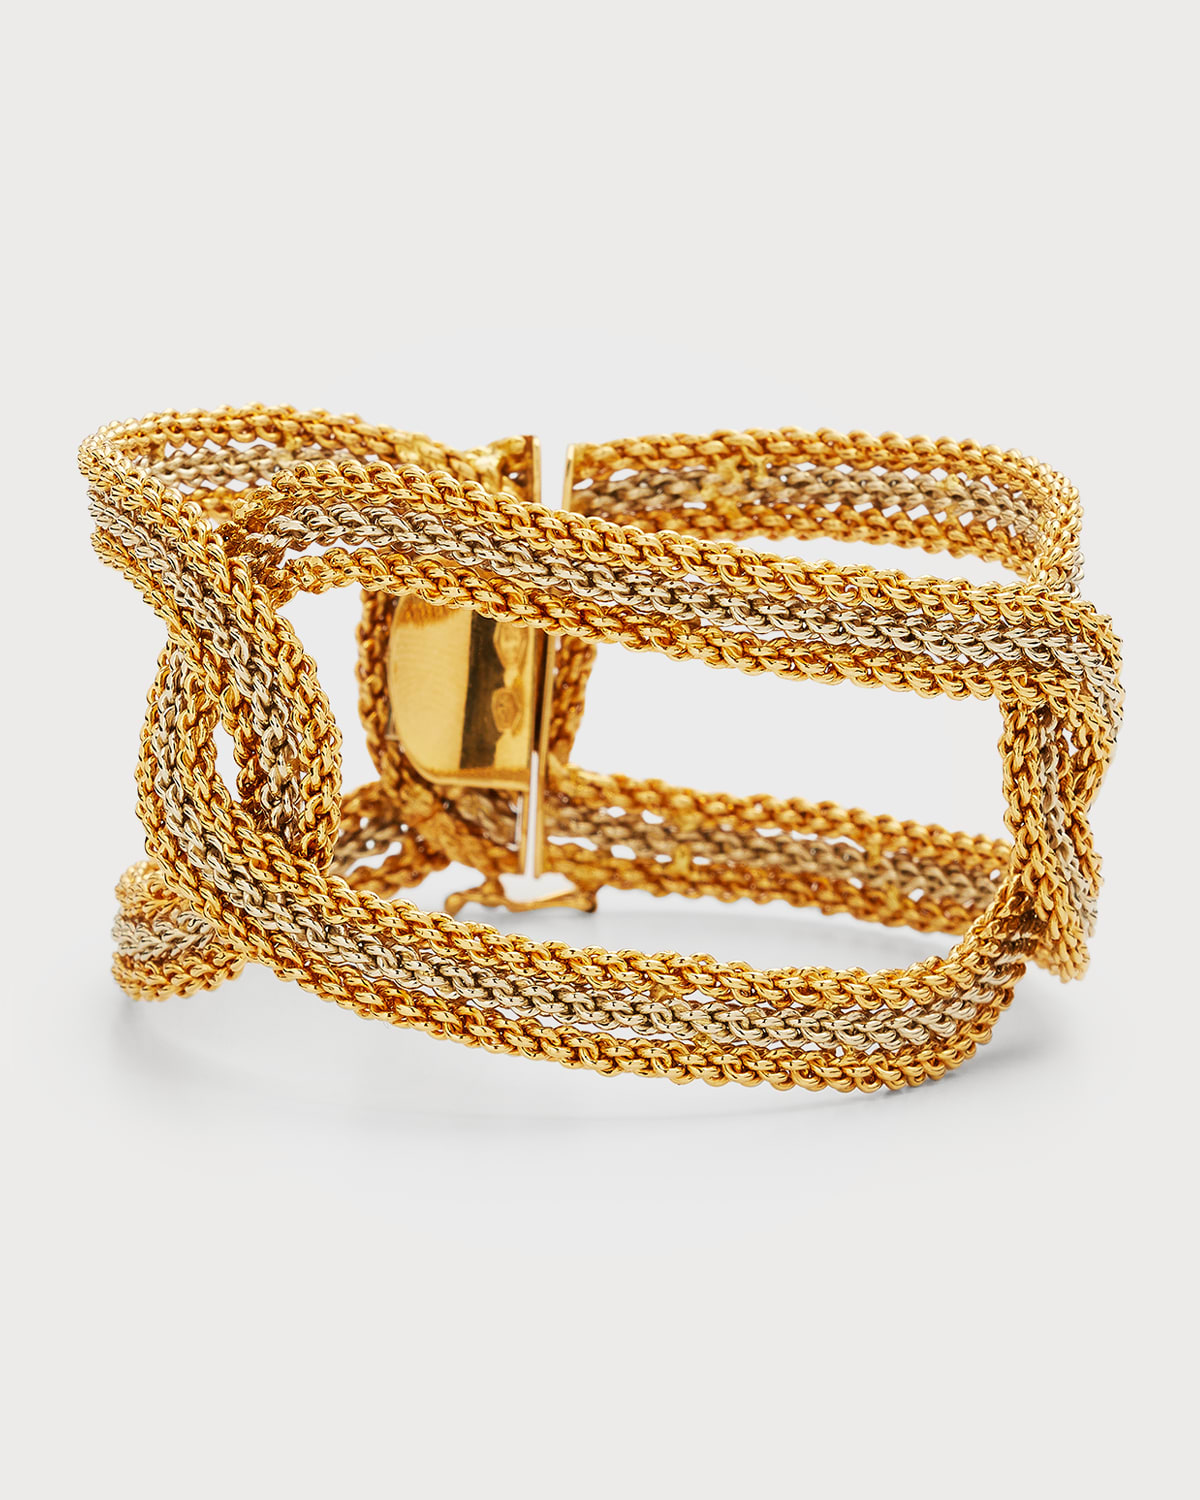 Nm Estate Estate 18k Yellow Gold 3-link Woven Bracelet, 7.5"l